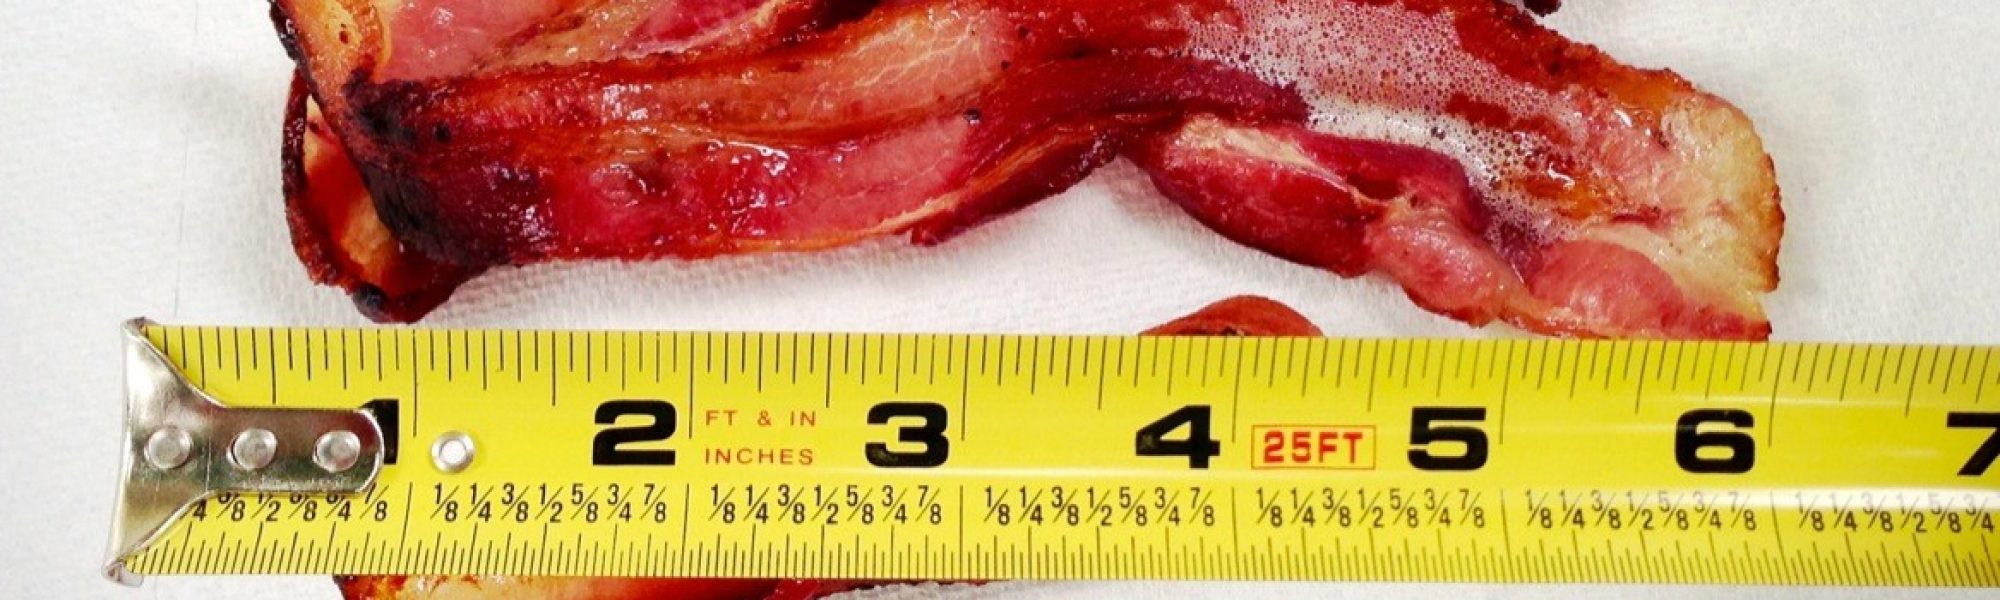 Bacon shrinking